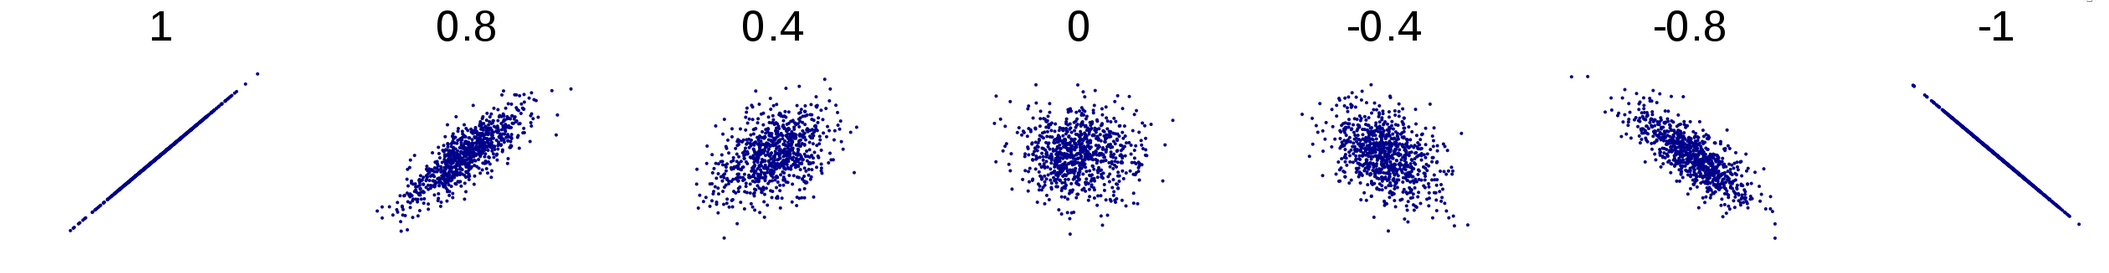 Coeficiente de correlación de Pearson.png